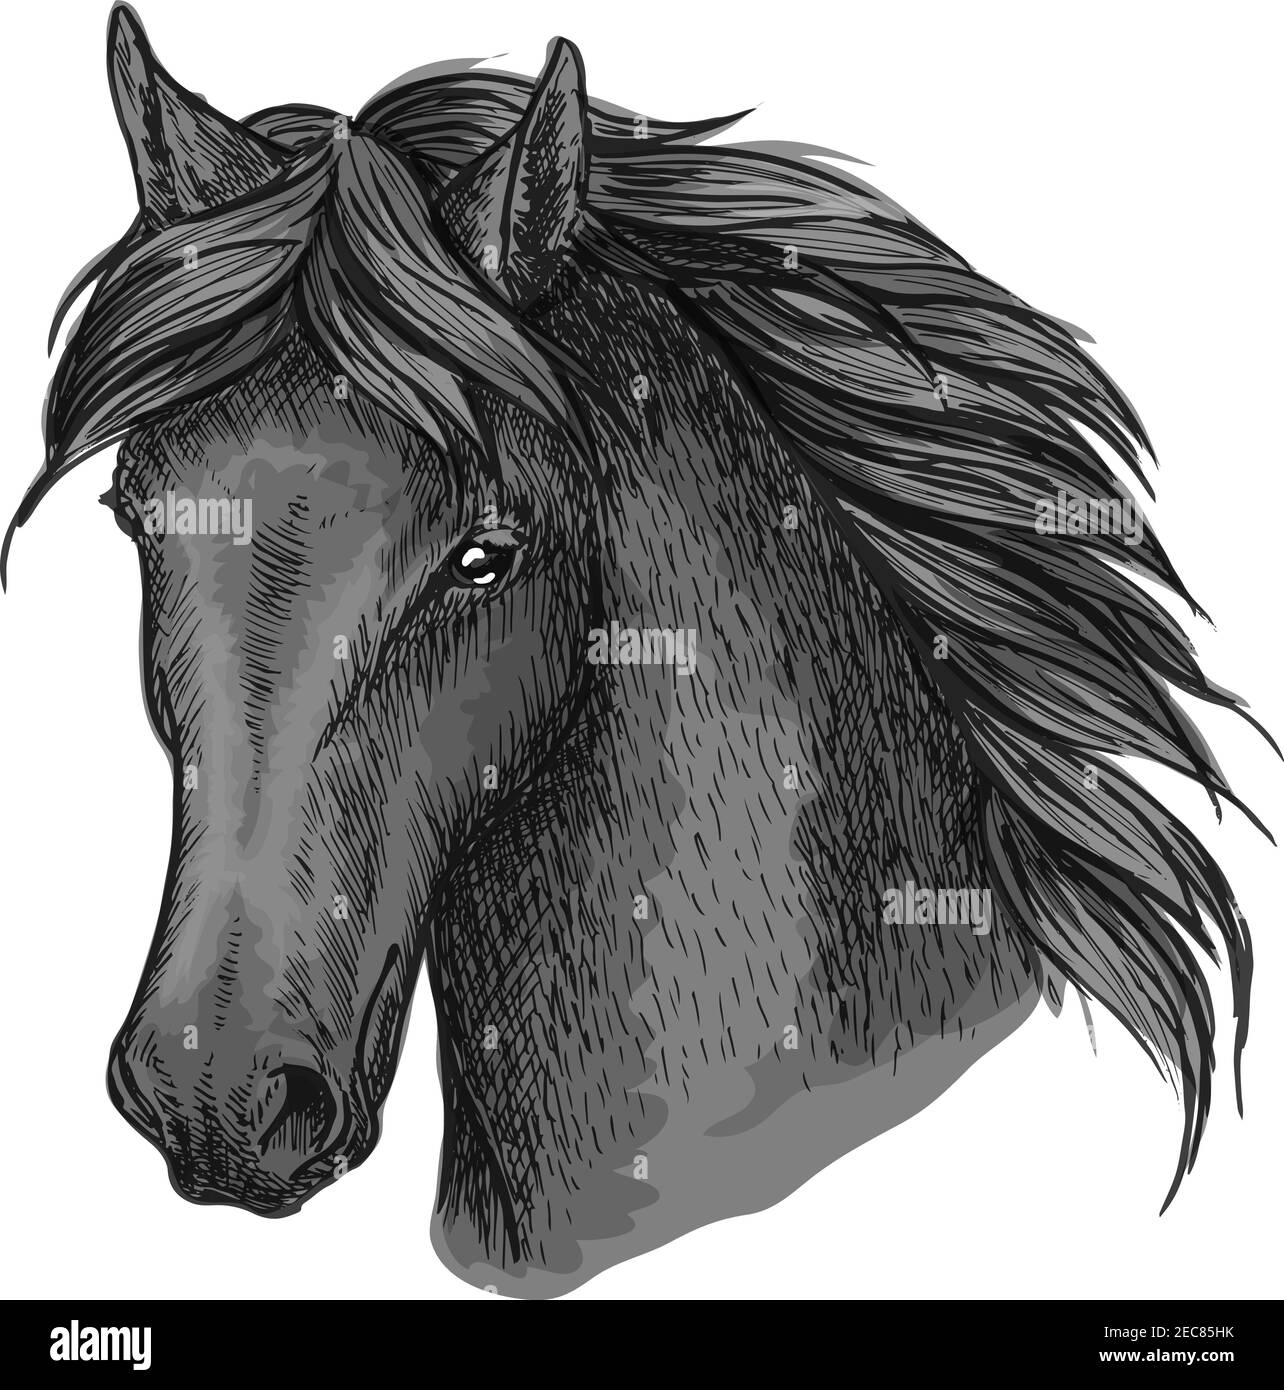 Portrait de cheval noir. Stallion de Mustang avec un look calme, une manie ondulée et des yeux gentils. Pour un usage sportif équesrien Illustration de Vecteur